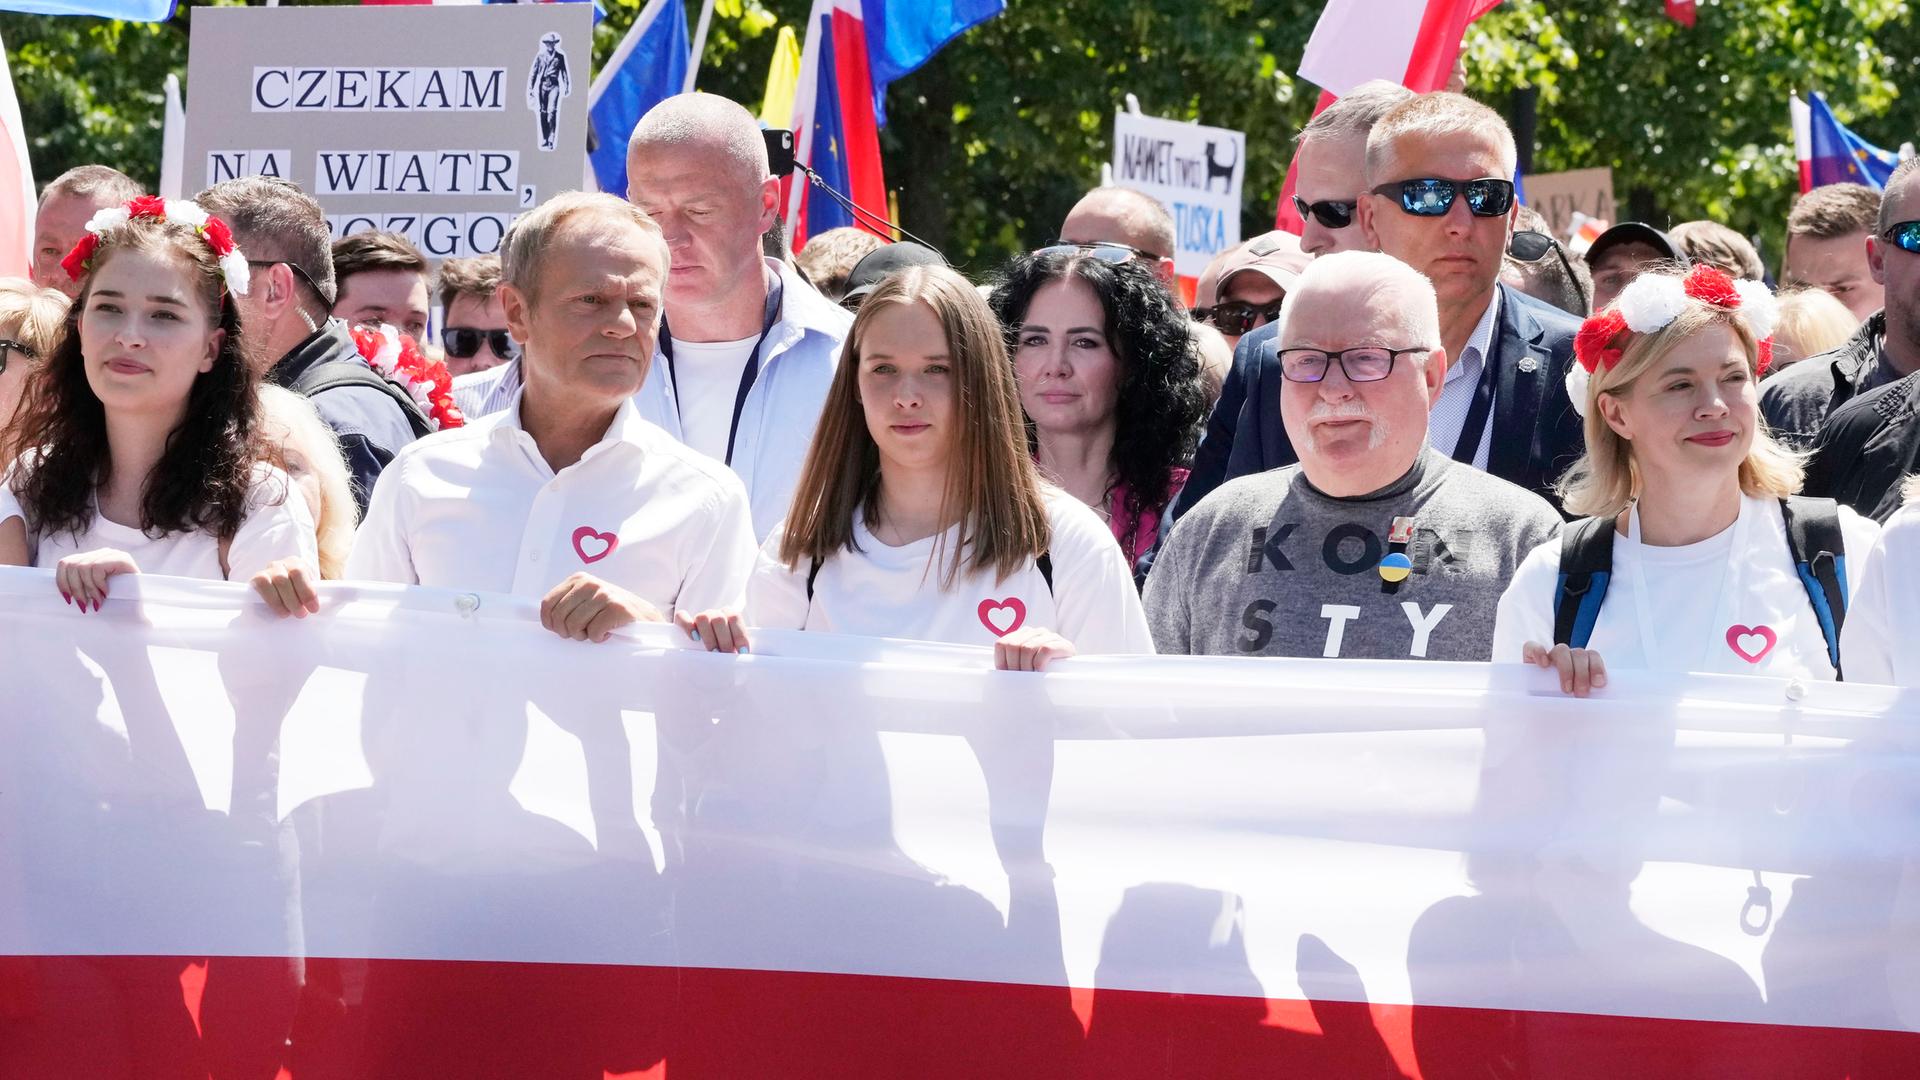 Donald Tusk und Lech Walesa, ehemaliger Präsident von Polen, nehmen an einem Protest gegen die Politik der PiS-Regierung teil.